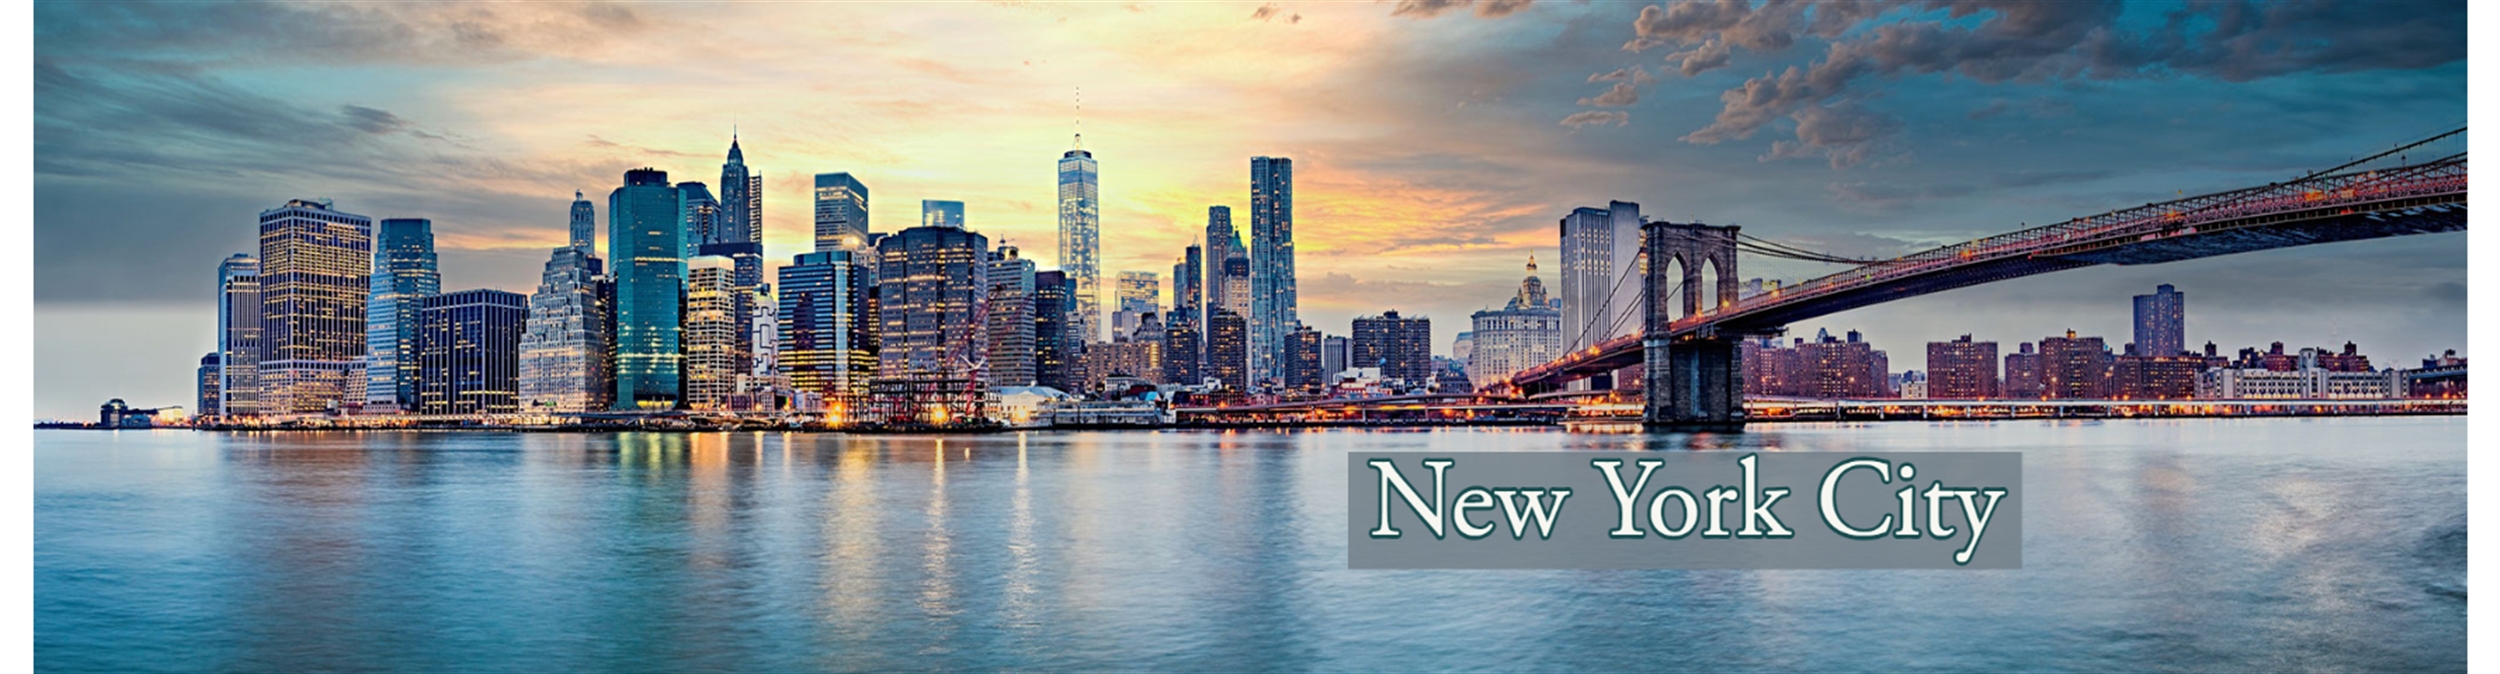 new york city banner.jpg